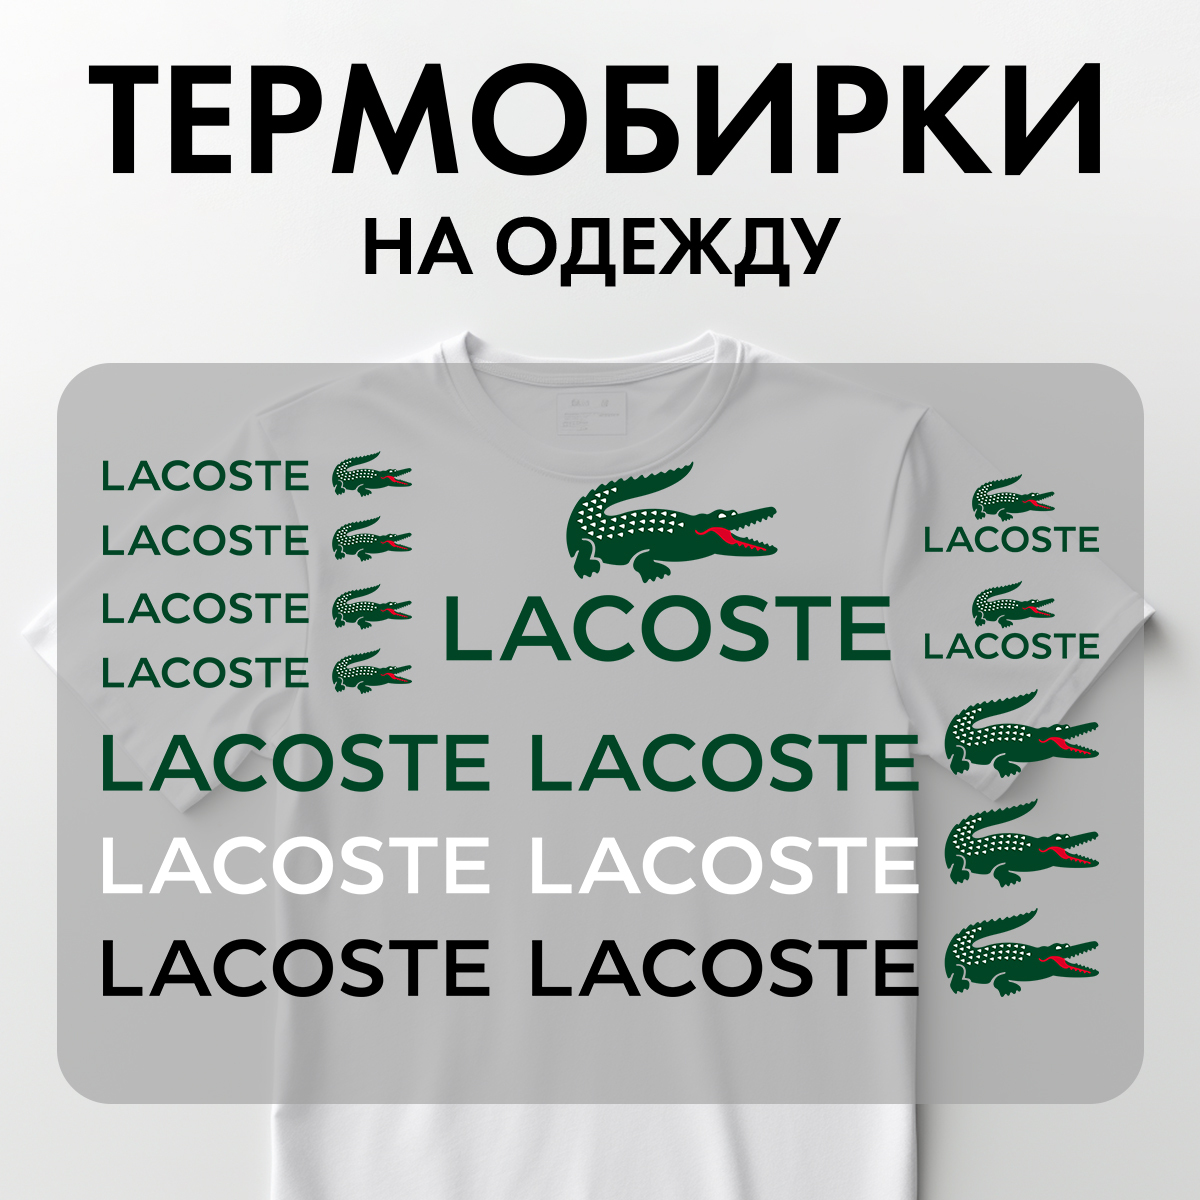 Термонаклейки Rekoy TB-LOGO Lac на одежду, логотип, надписи